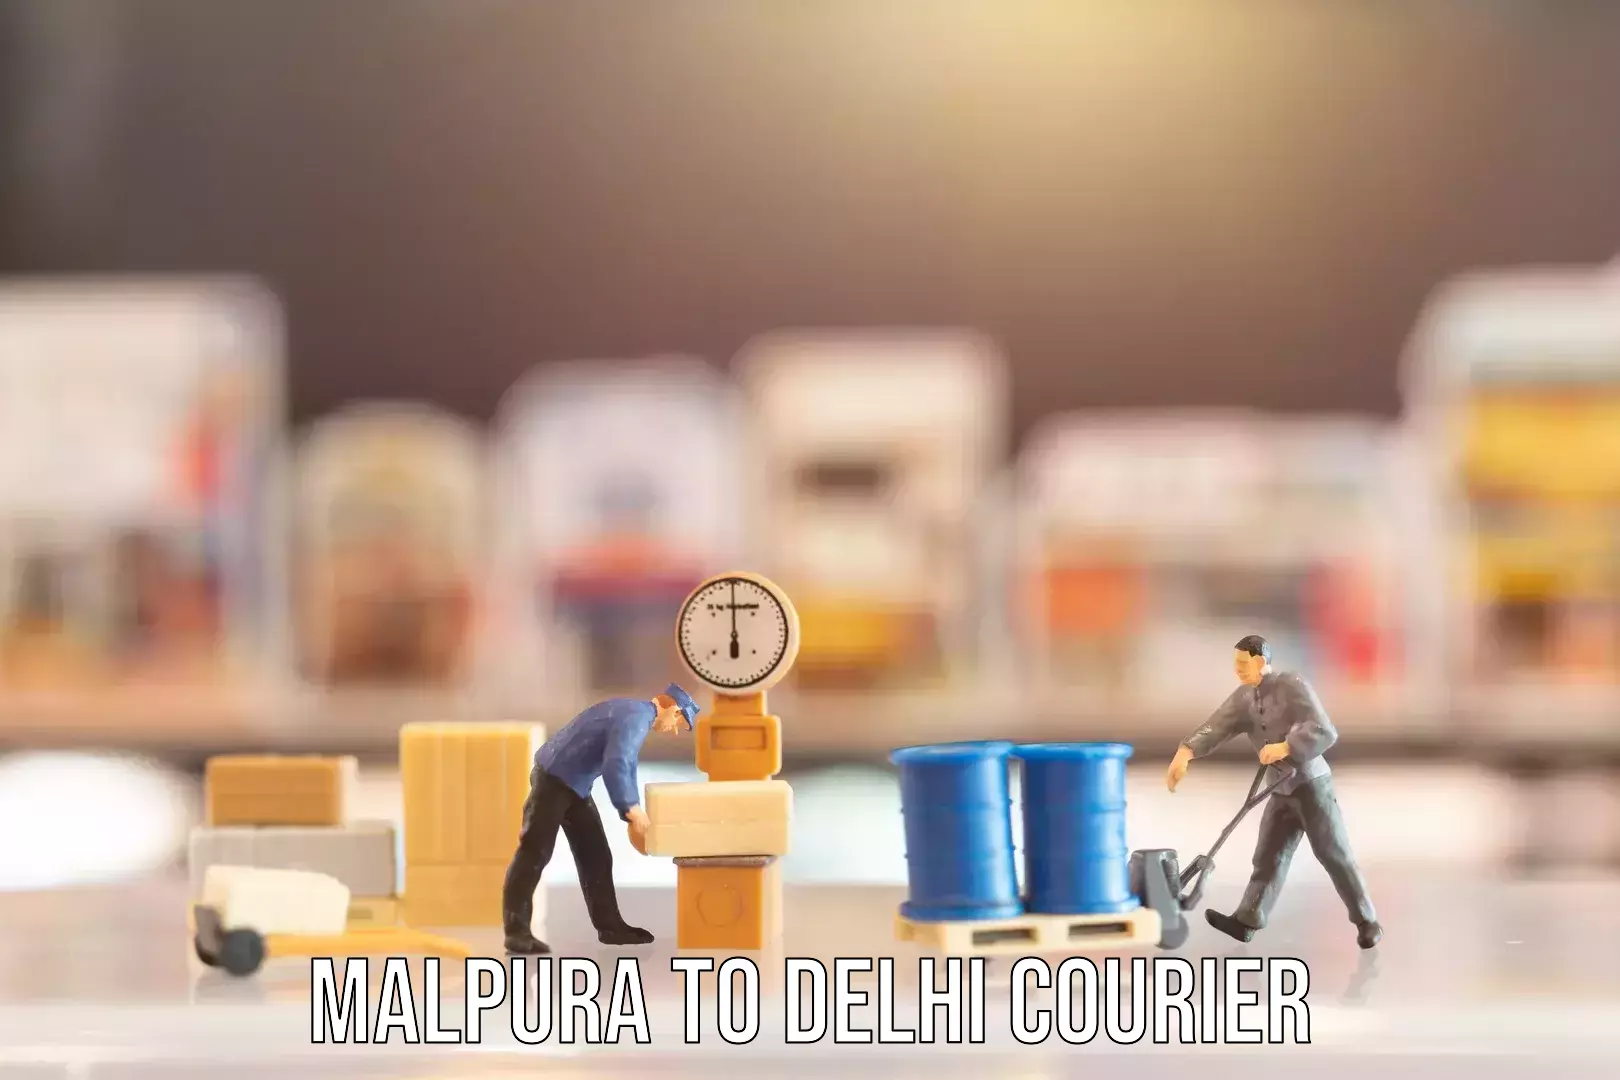 Baggage transport scheduler Malpura to NIT Delhi